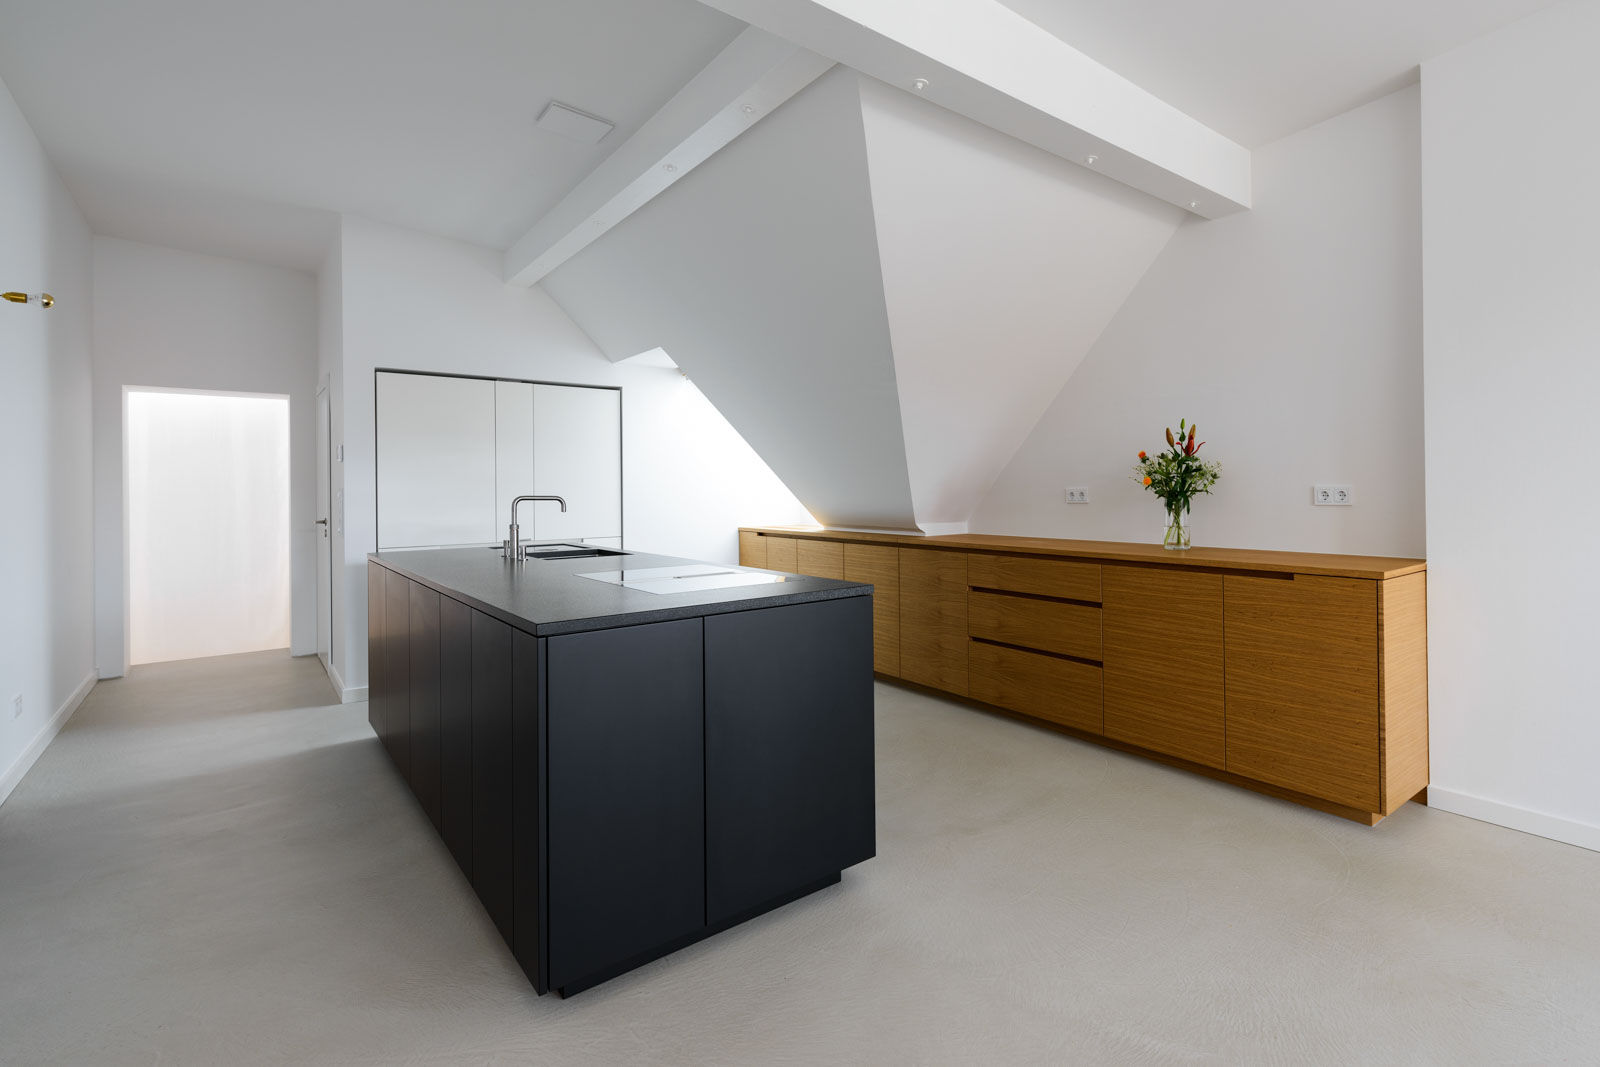 Elegante Architekturküche, DER RAUM DER RAUM Modern kitchen